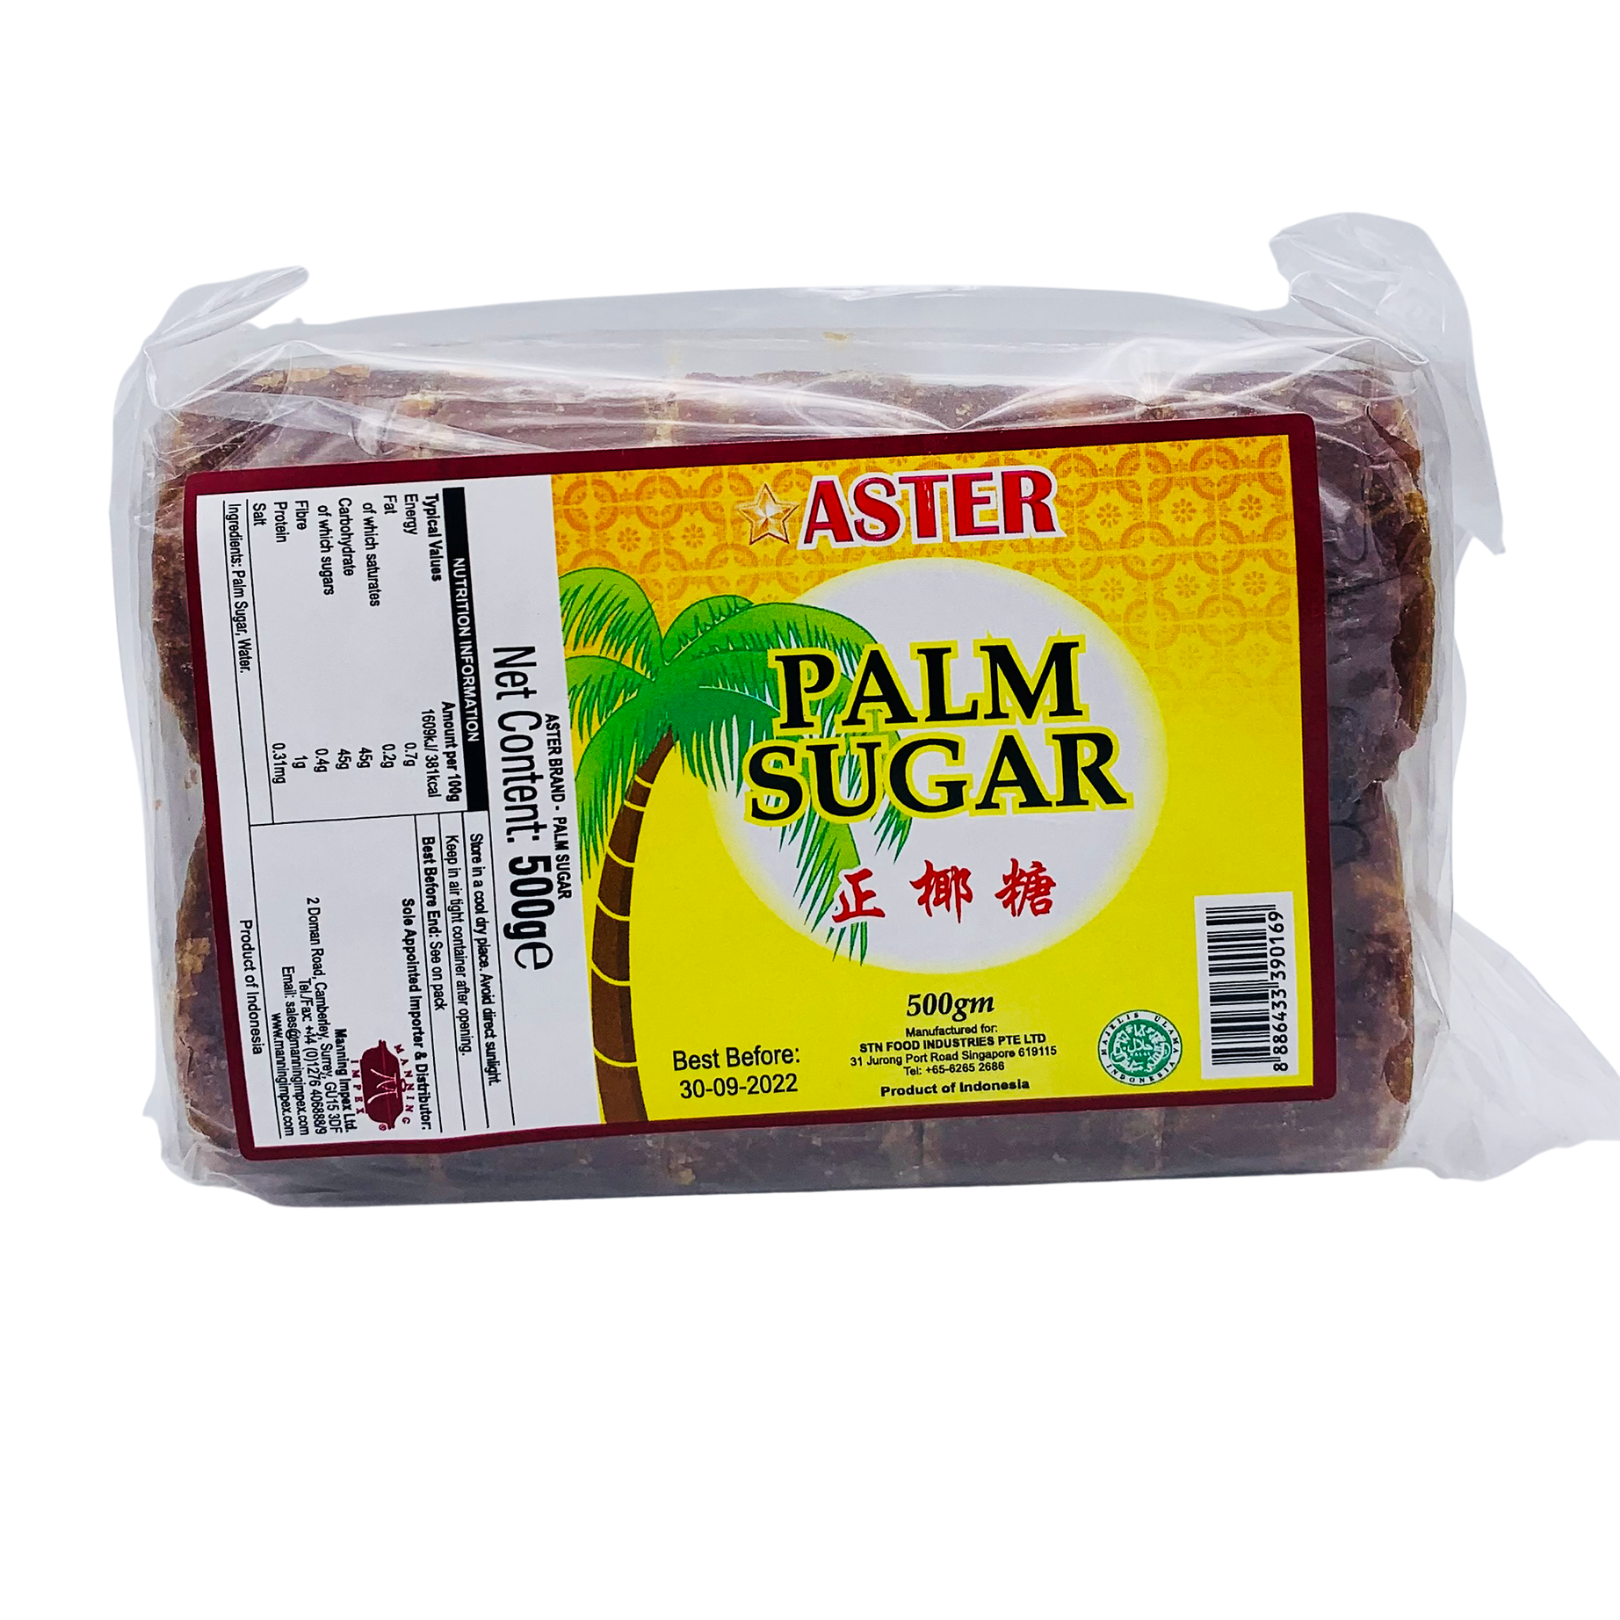 Palm Sugar (Gula Jawa) 500g by Aster